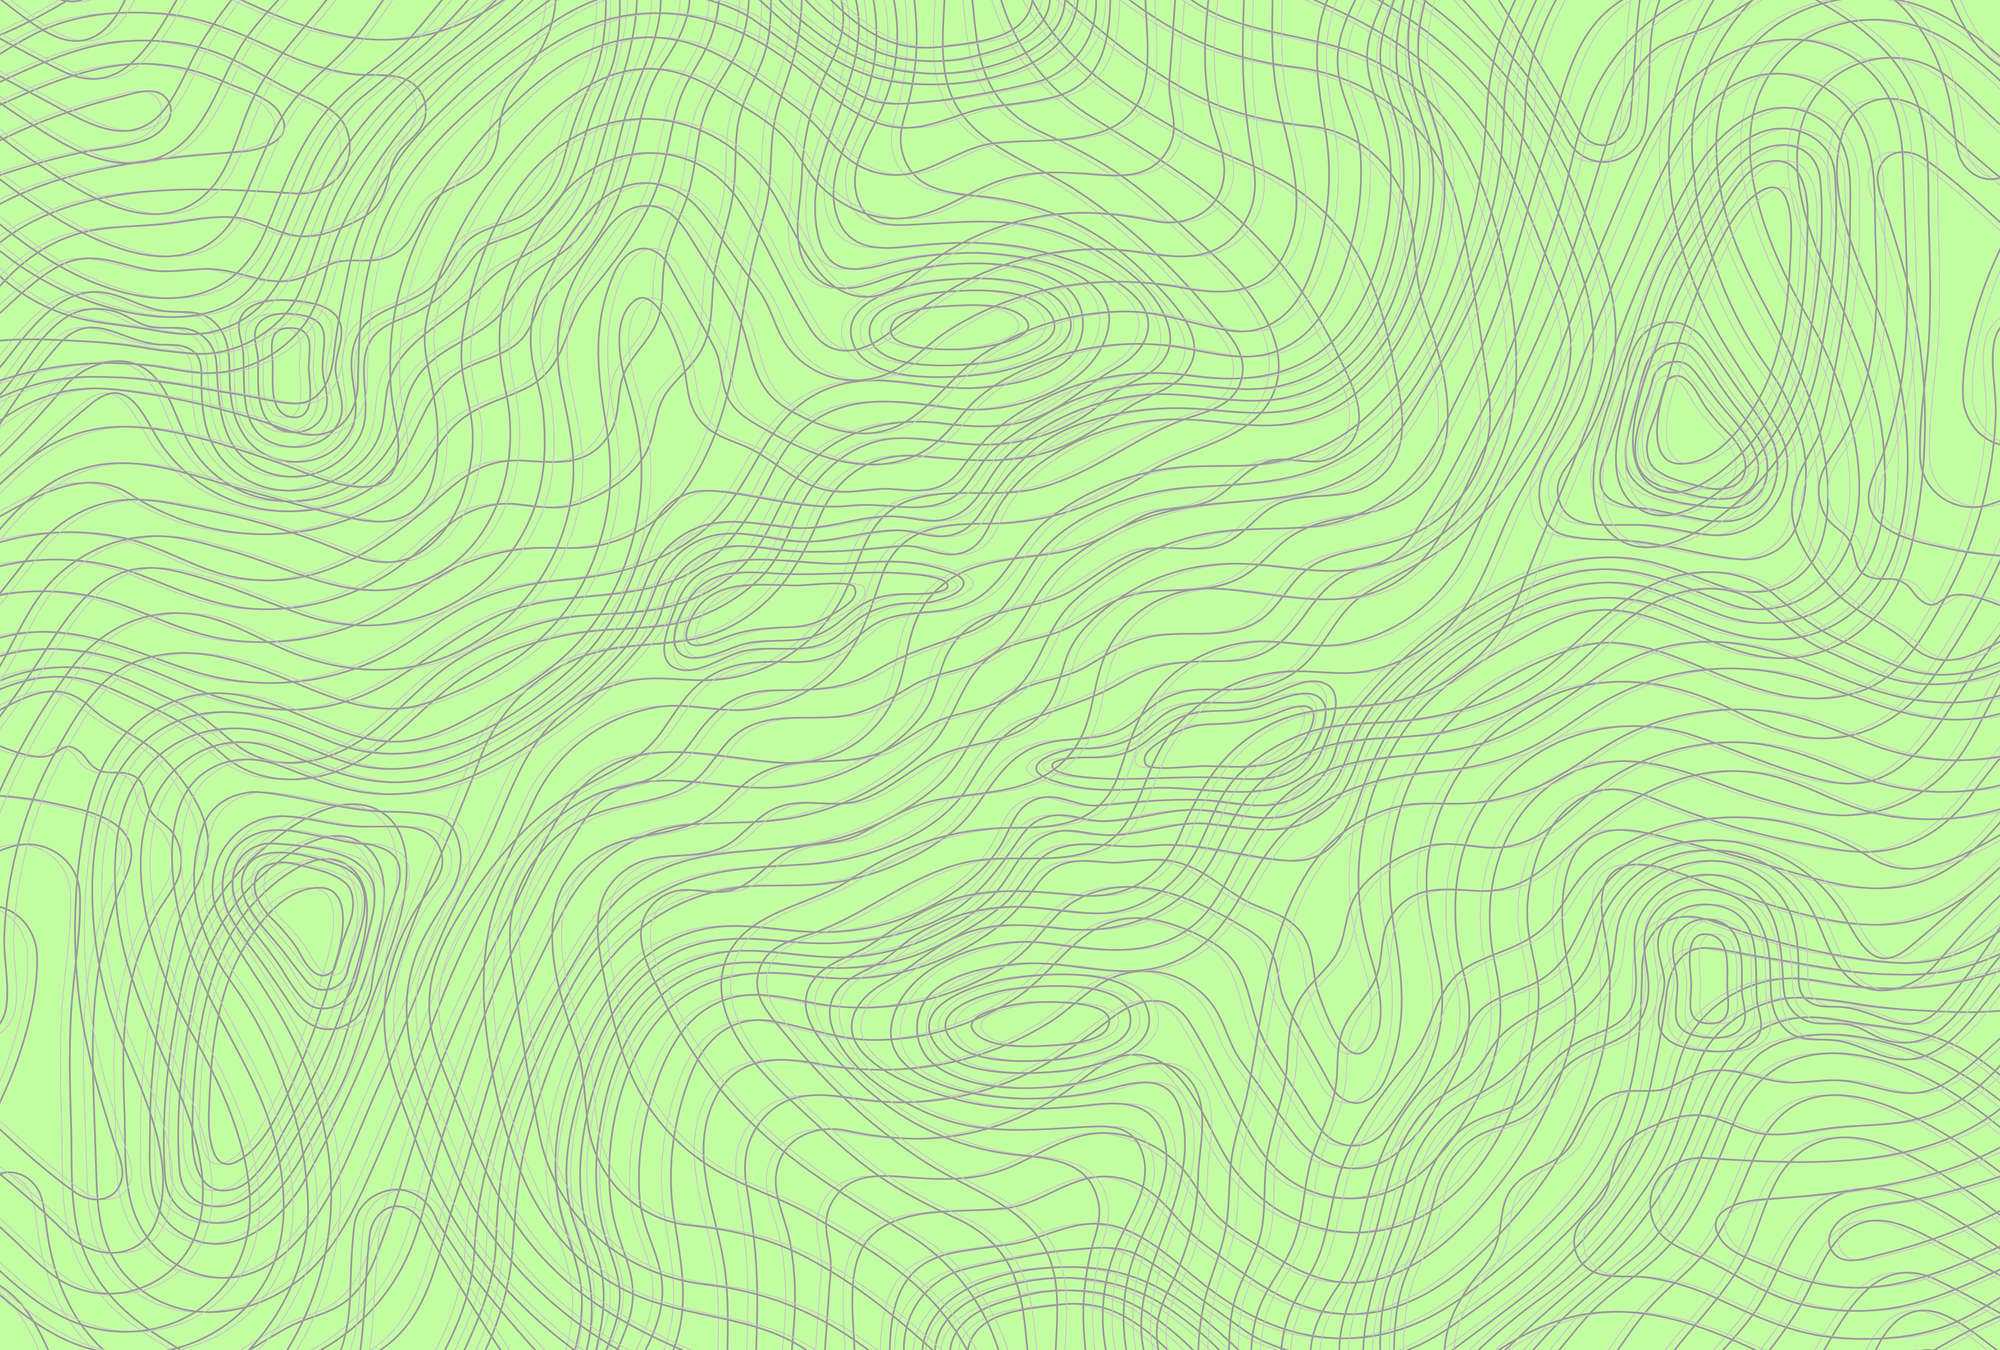             Groen Behang met Lijnen Design - Groen, Grijs
        